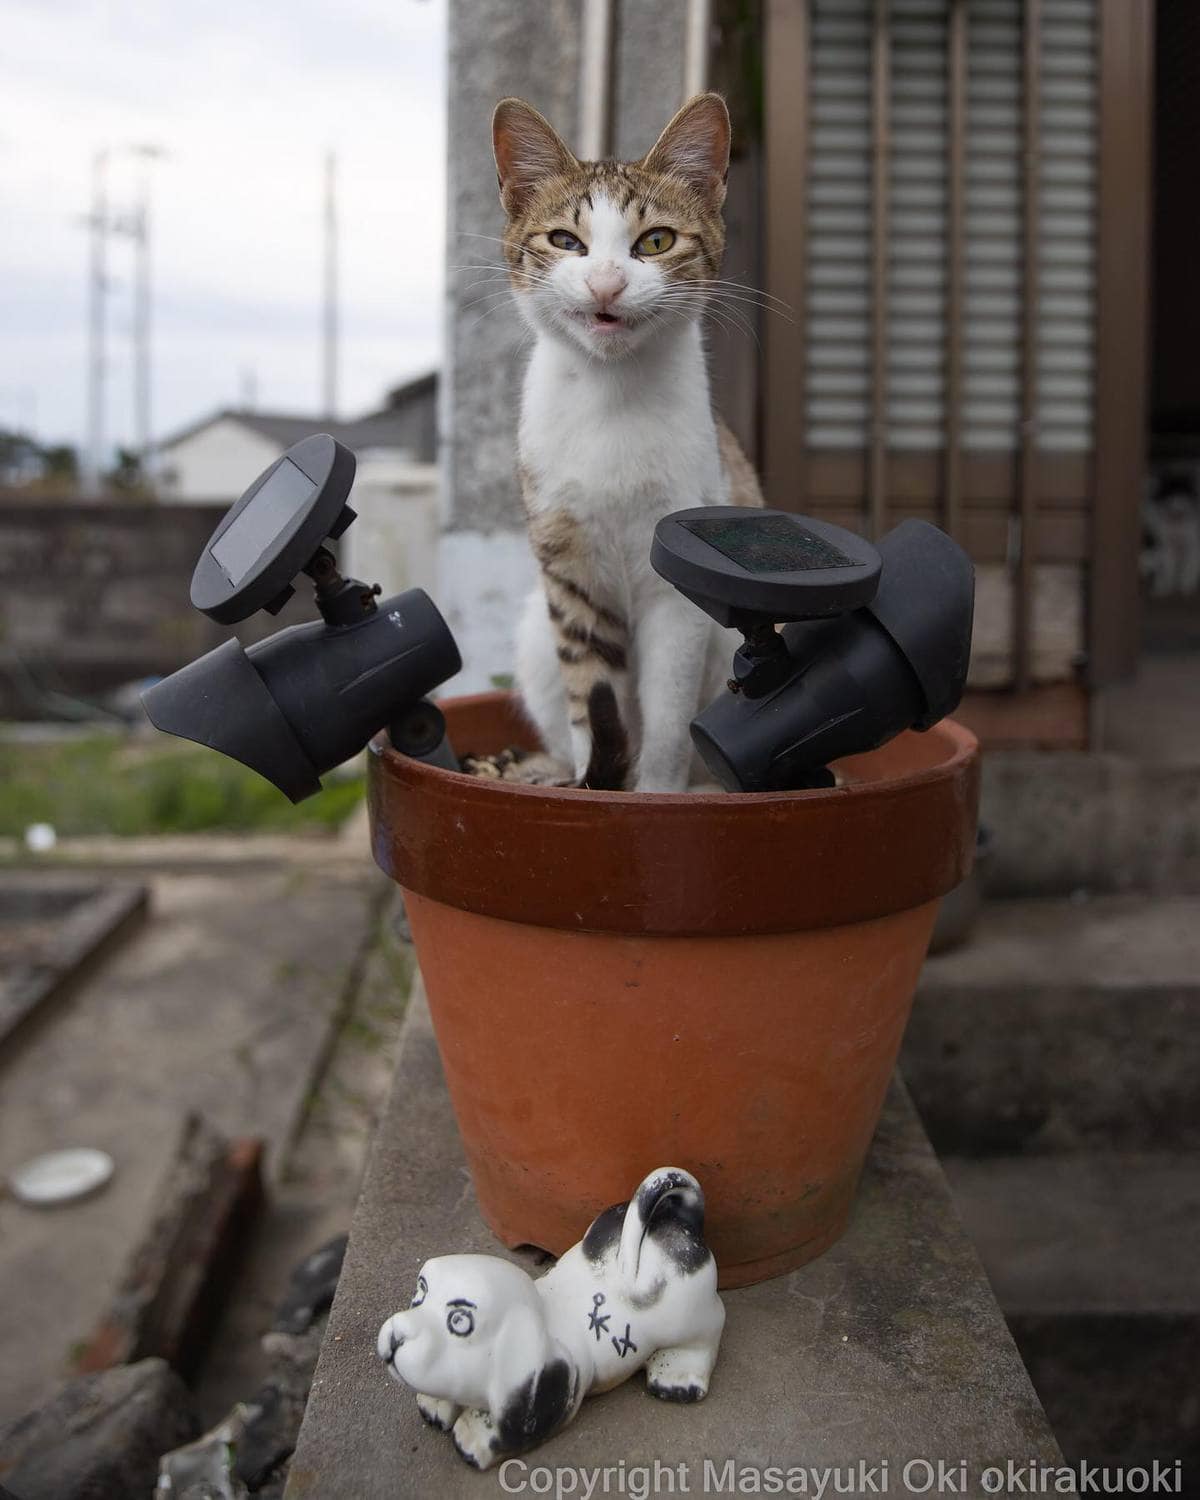 20 снимков уличных котов от японского фотографа, который как никто умеет запечатлевать харизму этих бродяг 65